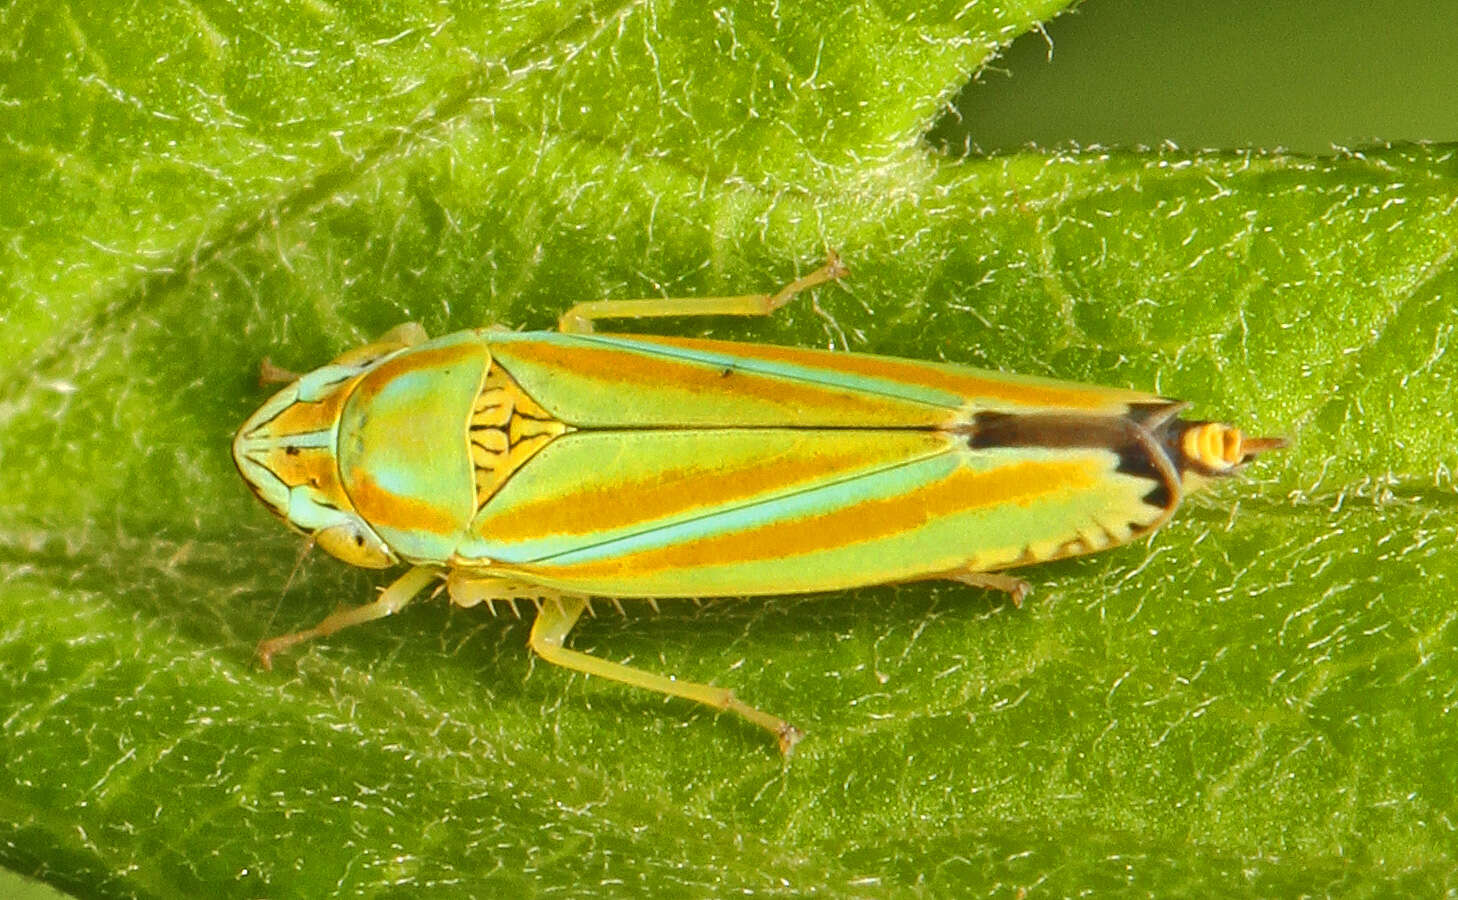 Image of Graphocephala versuta (Say 1830)